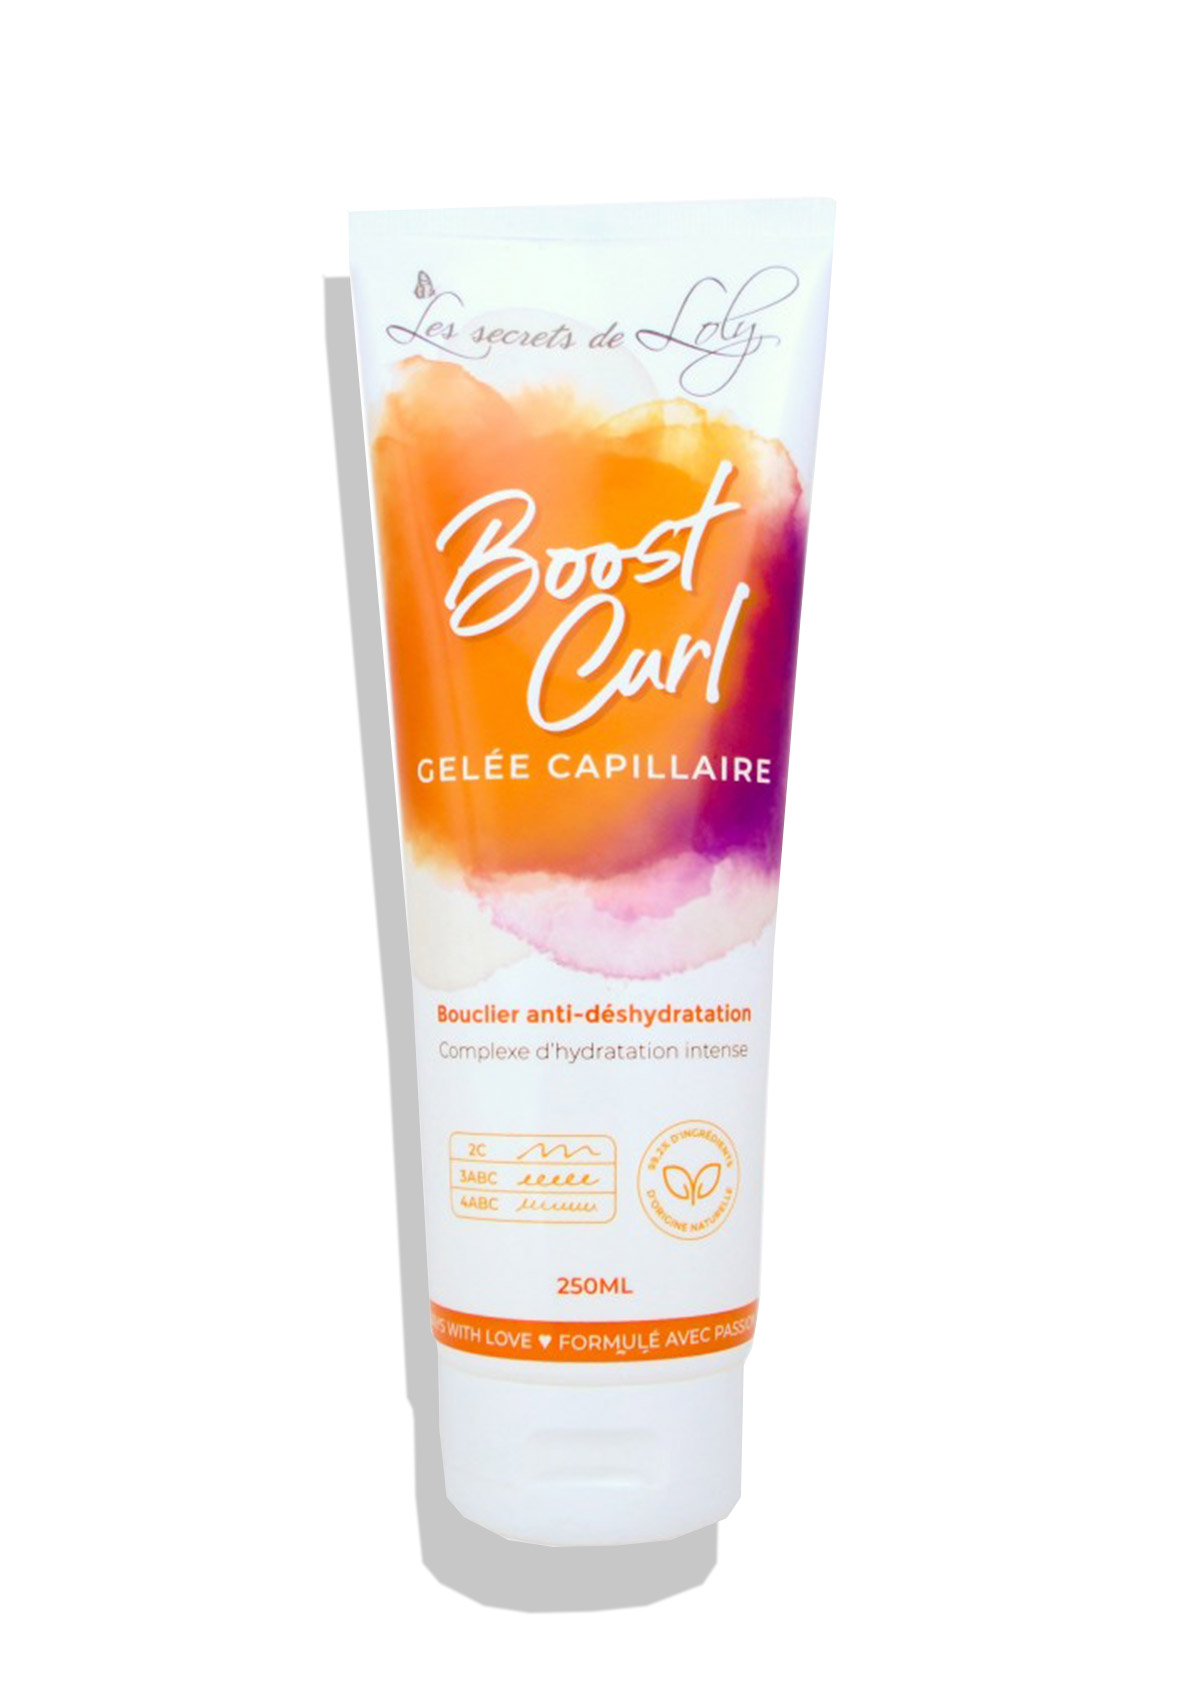 Boost Curl - Les Secrets de Loly